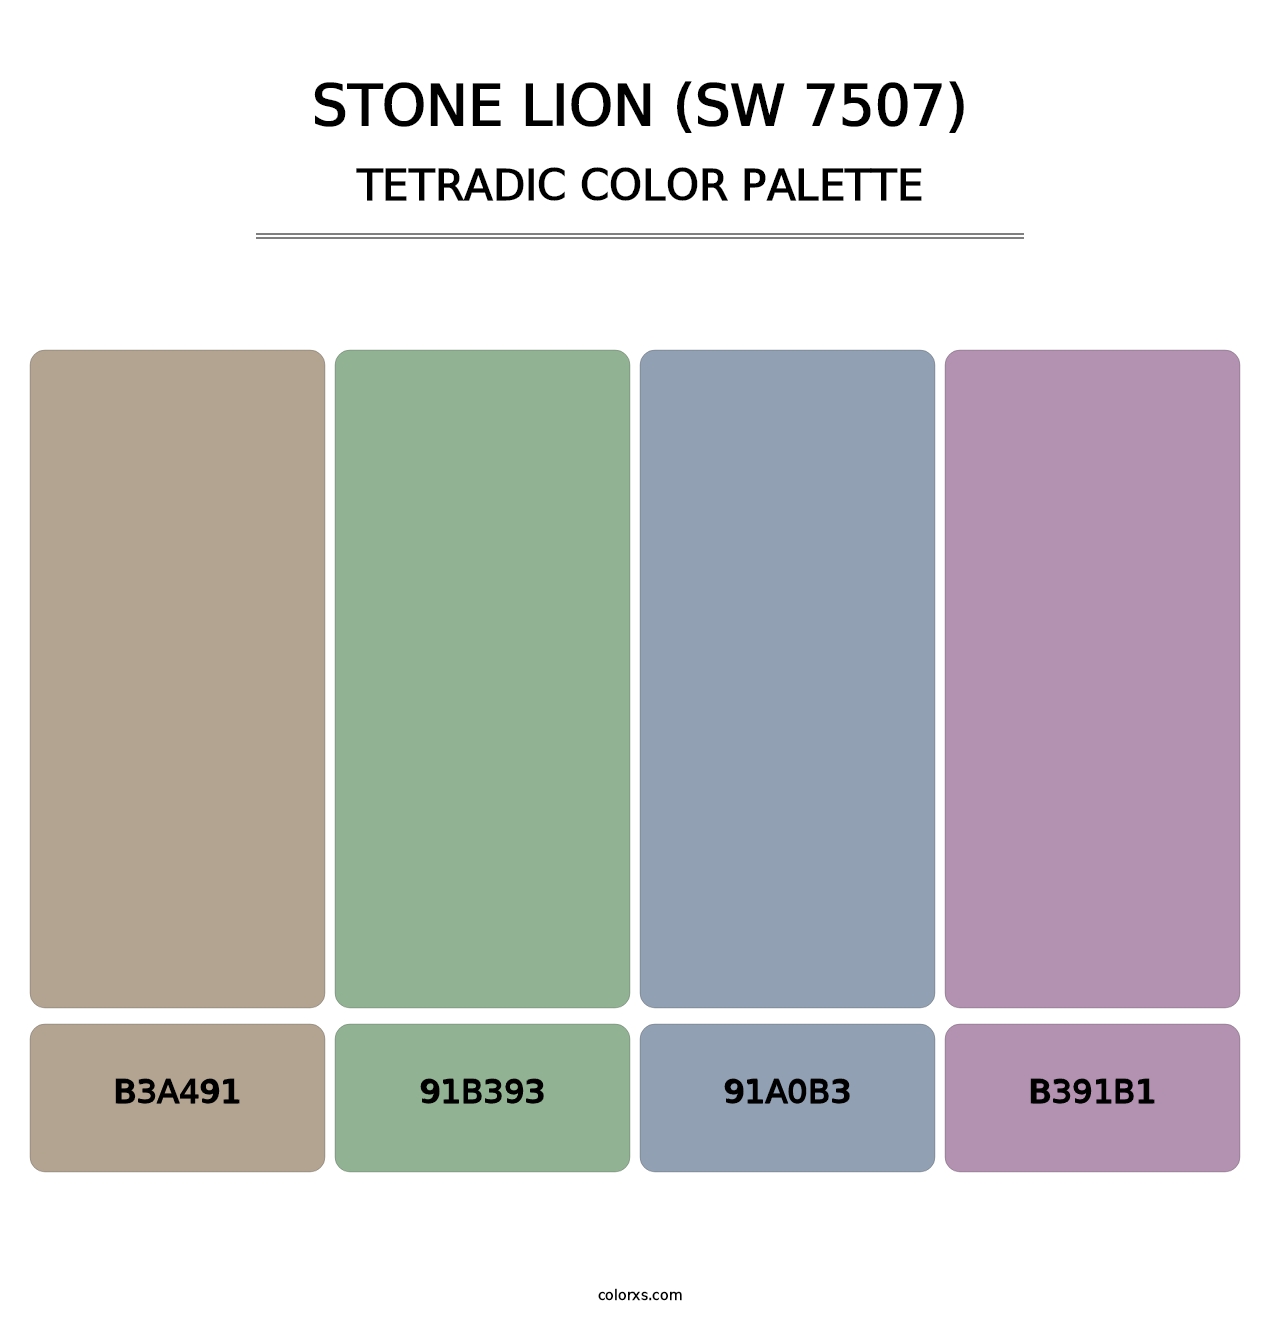 Stone Lion (SW 7507) - Tetradic Color Palette